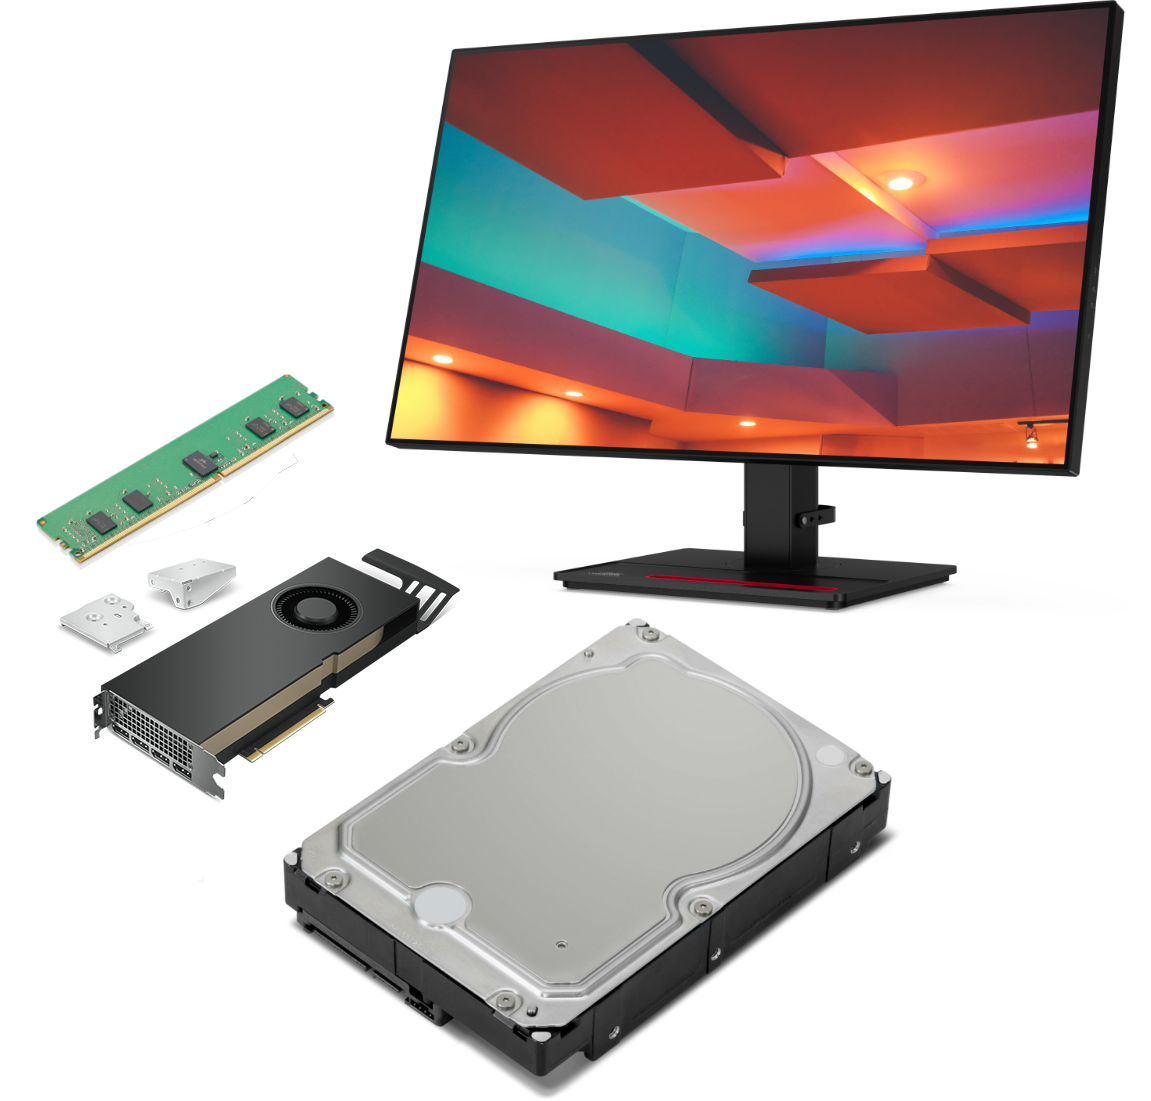 5 accessori compatibili con la workstation Lenovo ThinkStation P620 Tower, tra i quali monitor e scheda grafica.